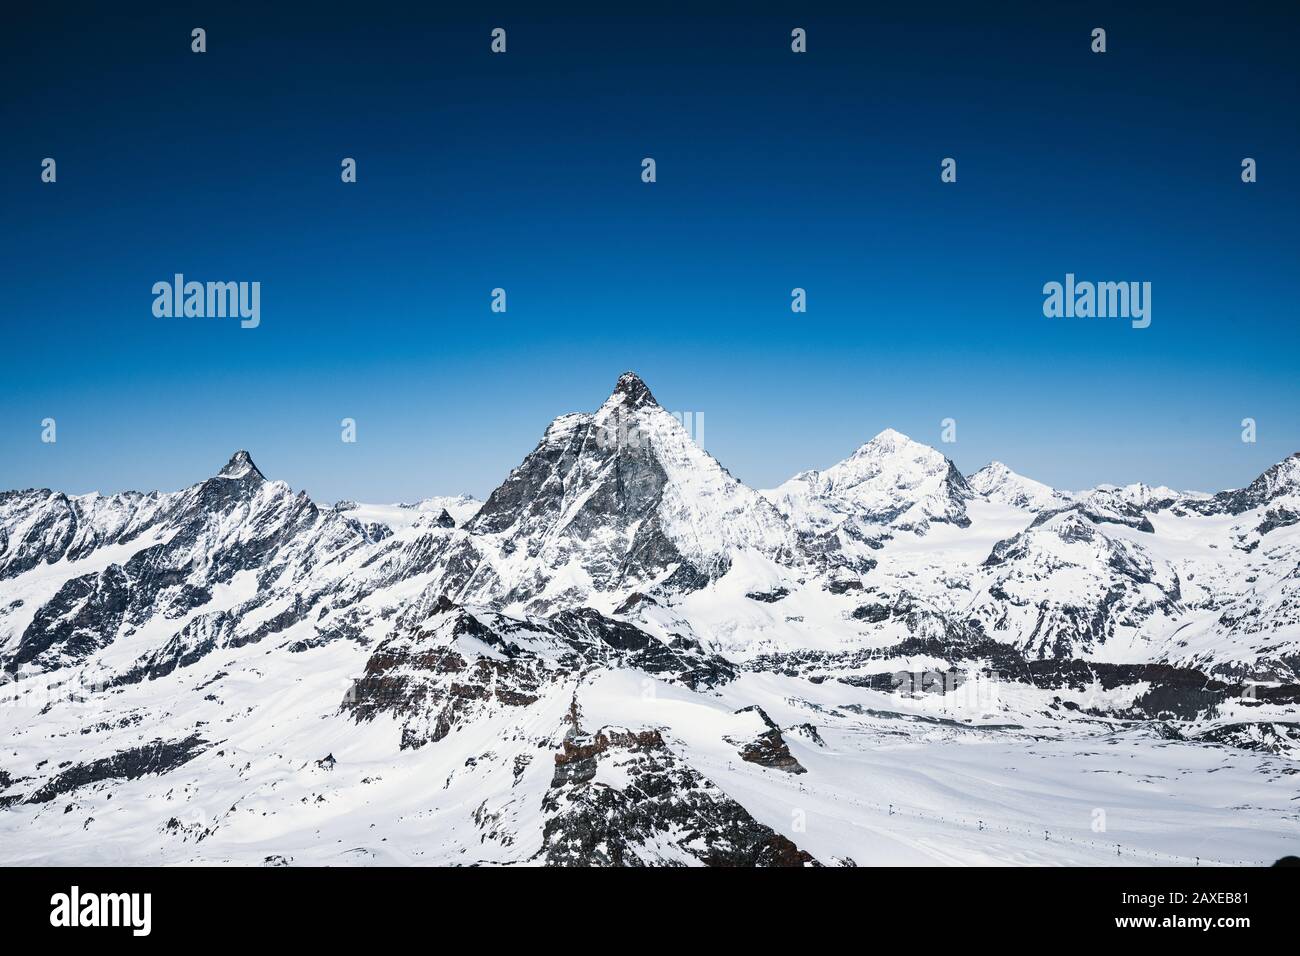 Vista del pico Matterhorn desde el punto glaciar Zermatt, Suiza Foto de stock